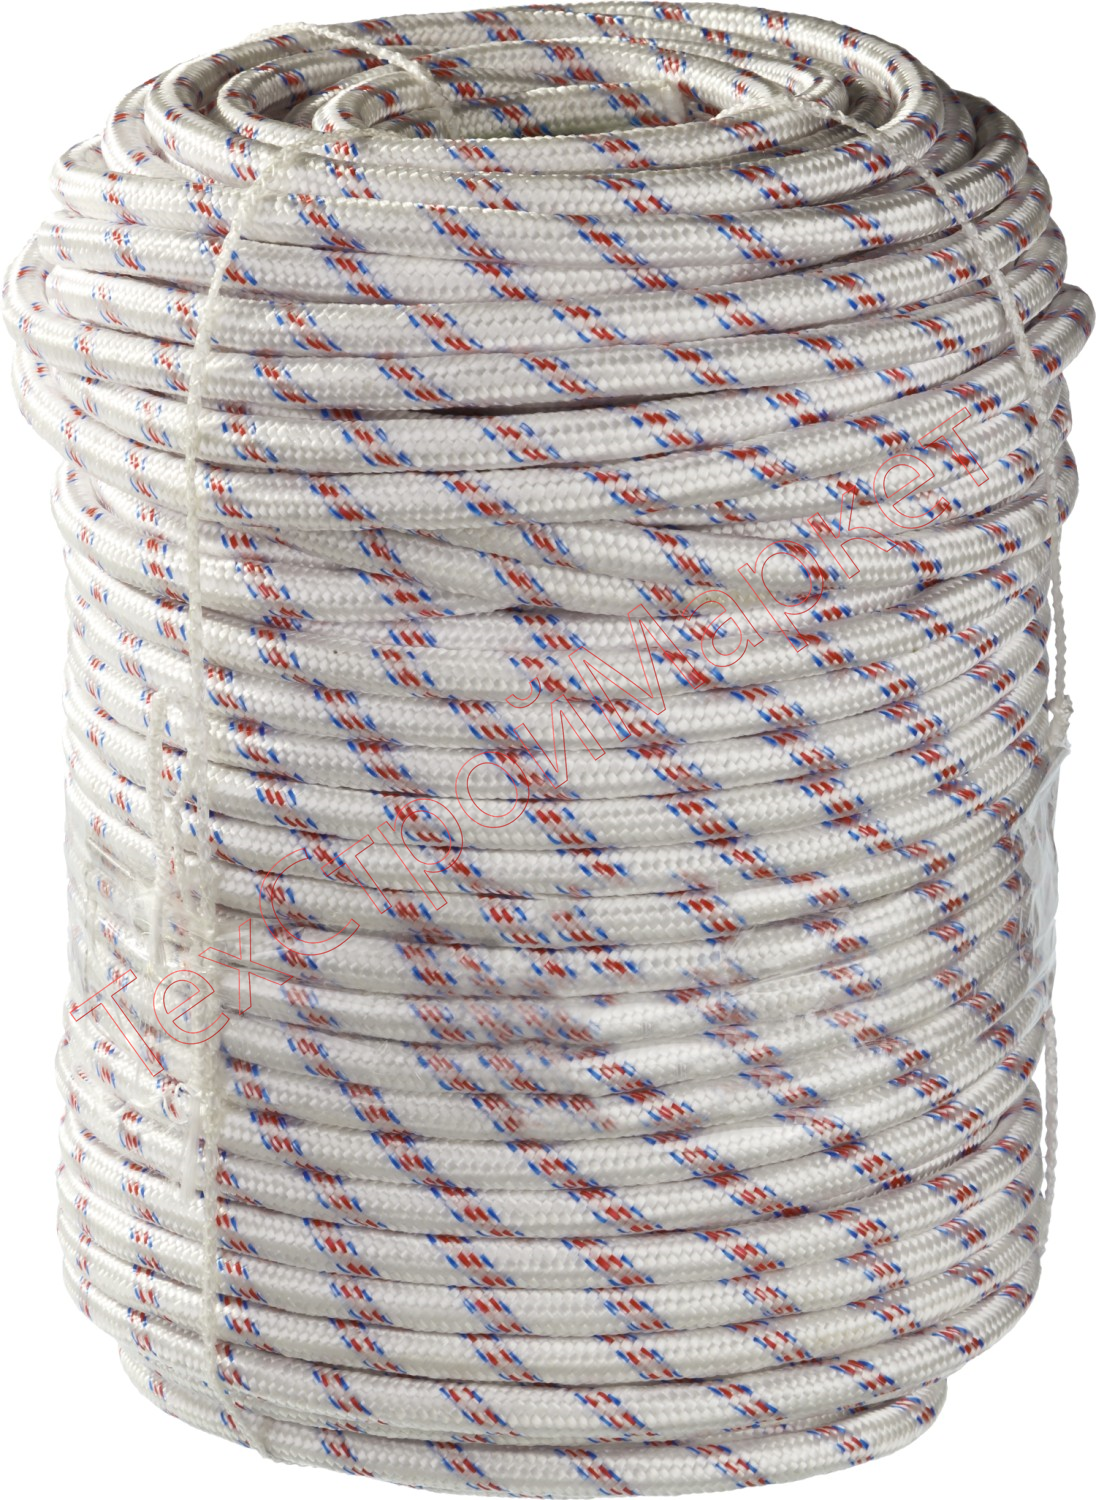 Фал плетёный полипропиленовый СИБИН 24-прядный с полипропиленовым сердечником, диаметр 12 мм, бухта 100 м, 1000 кгс